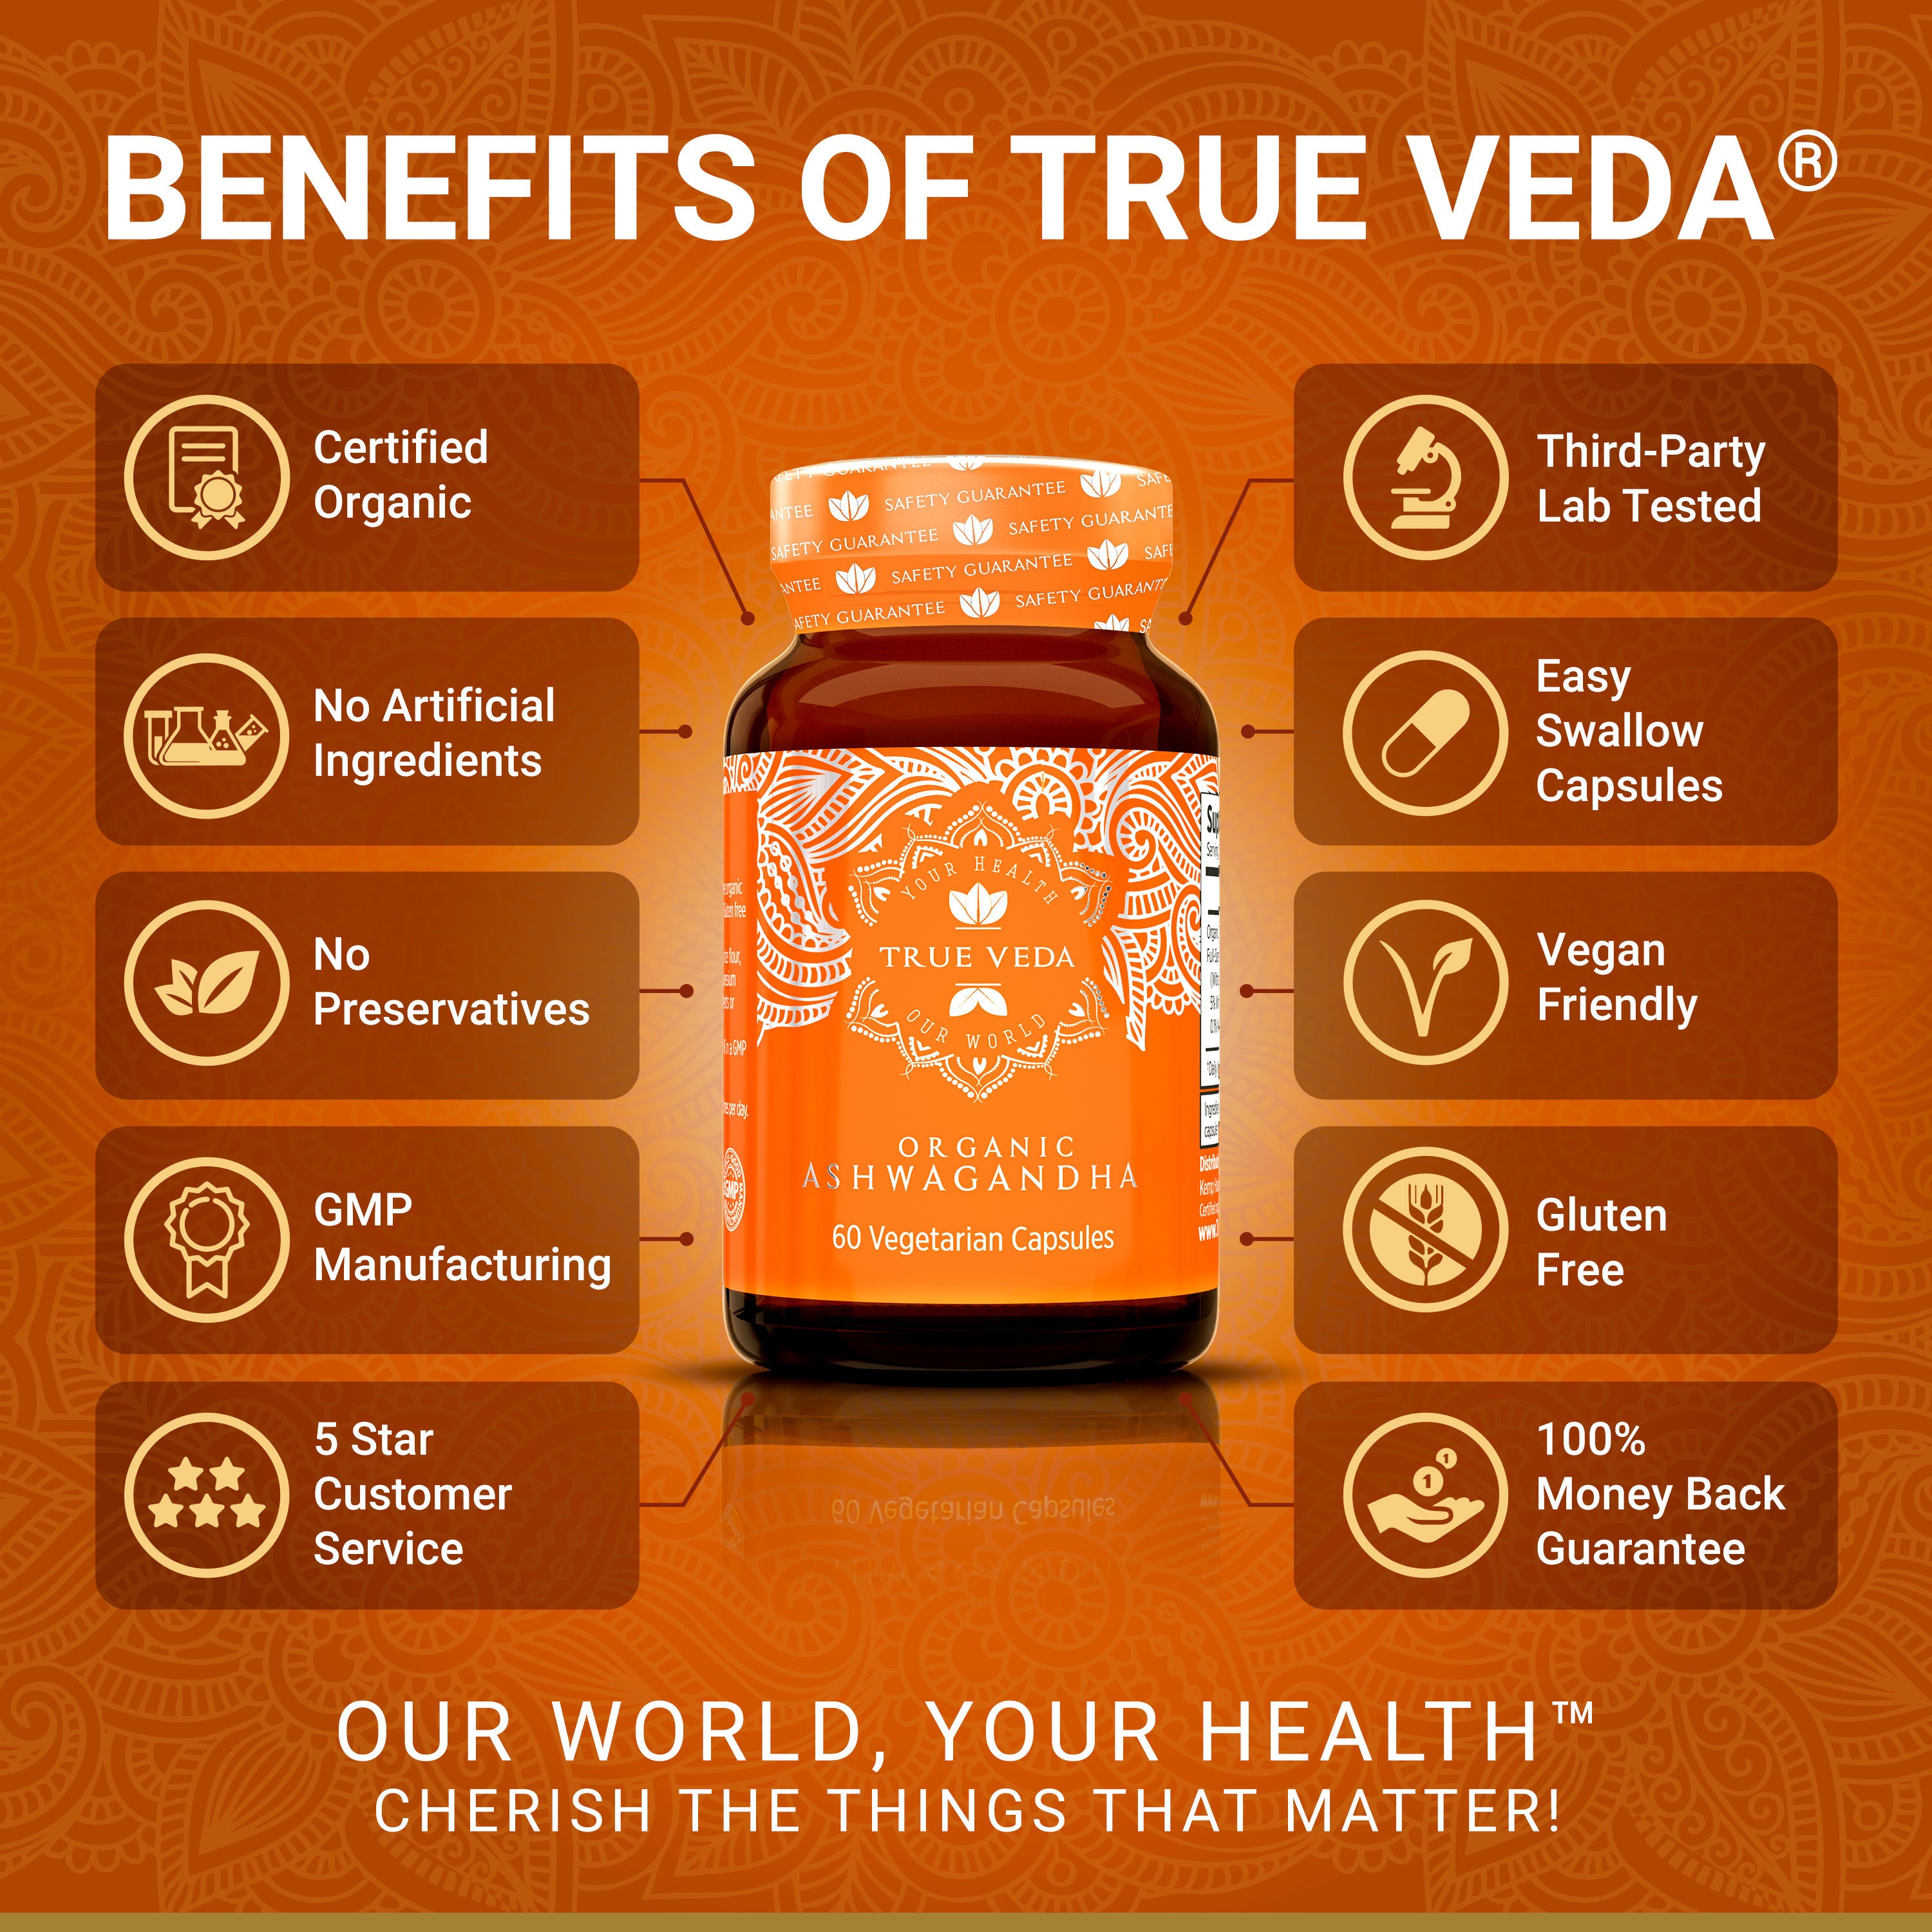 True Veda Organic Ashwagandha 180 Capsules (3 Bottles)